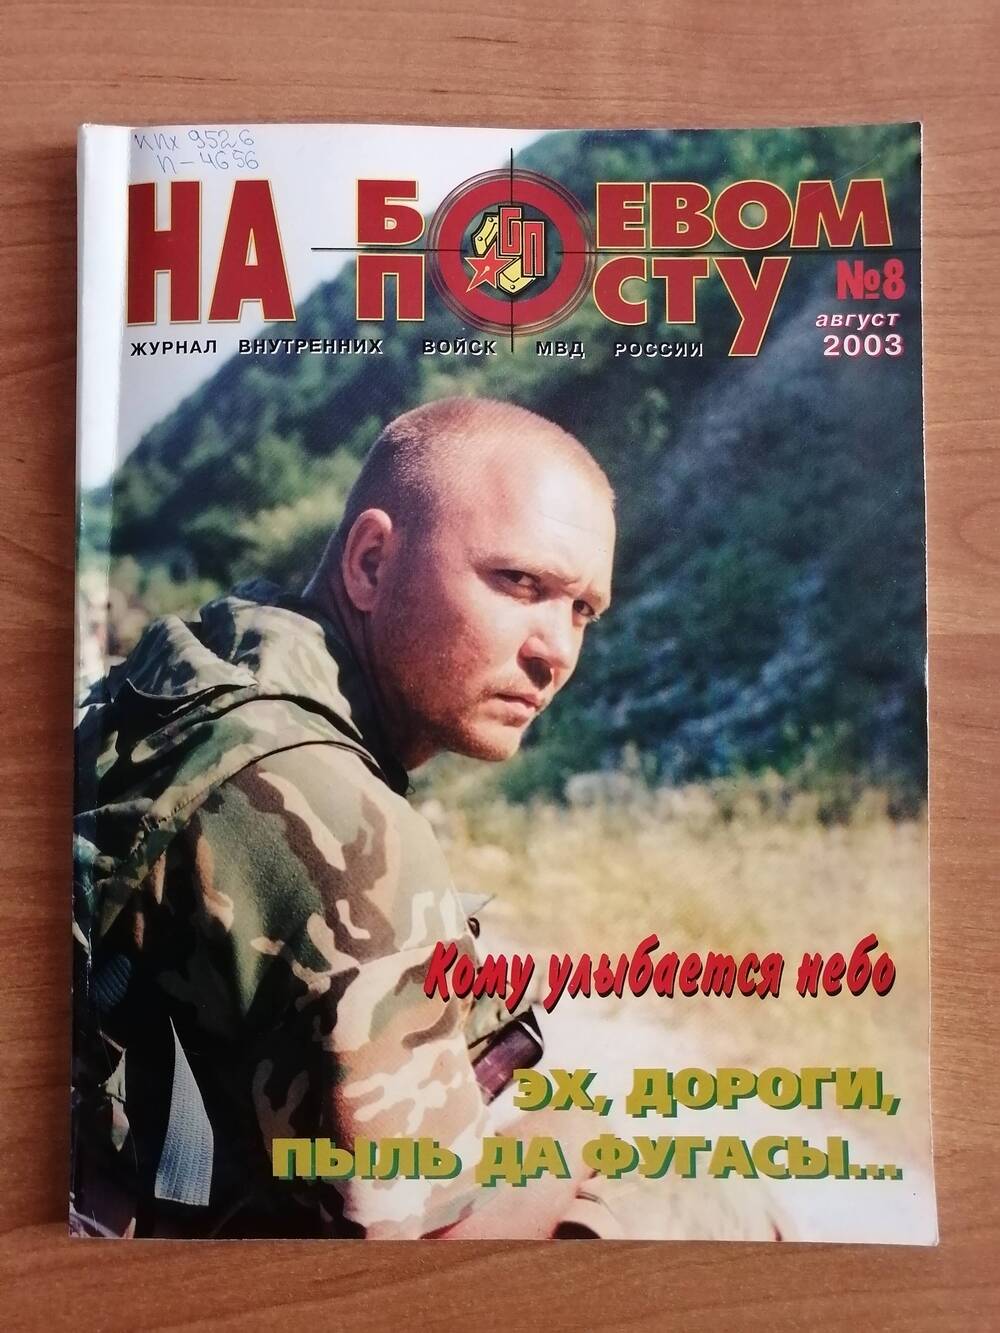 Журнал На боевом посту №8 за август 2003 года. Журнал внутренних войск МВД России.